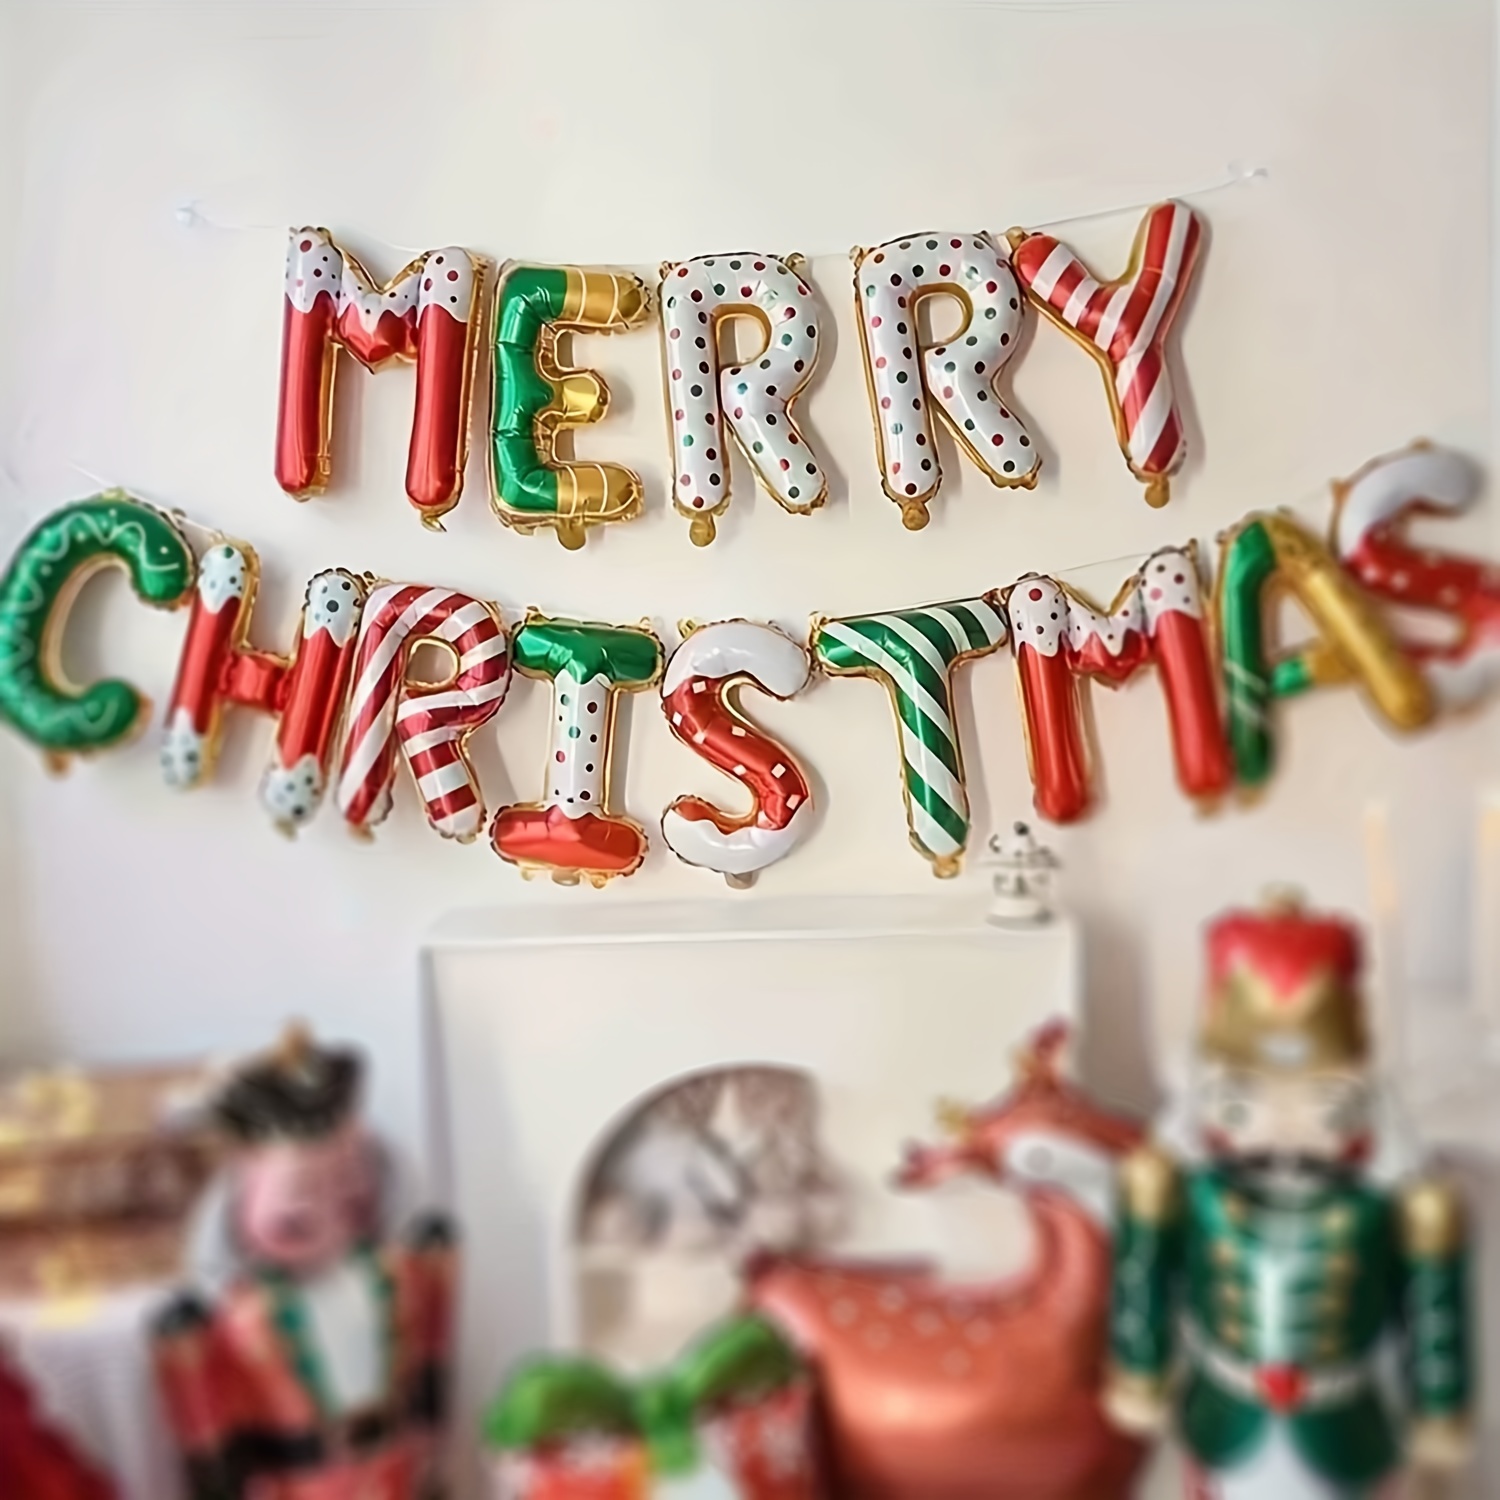 MERRY Et Sa Deco - Disponible chez Merry Decor 😍 😍 😍 Emballage